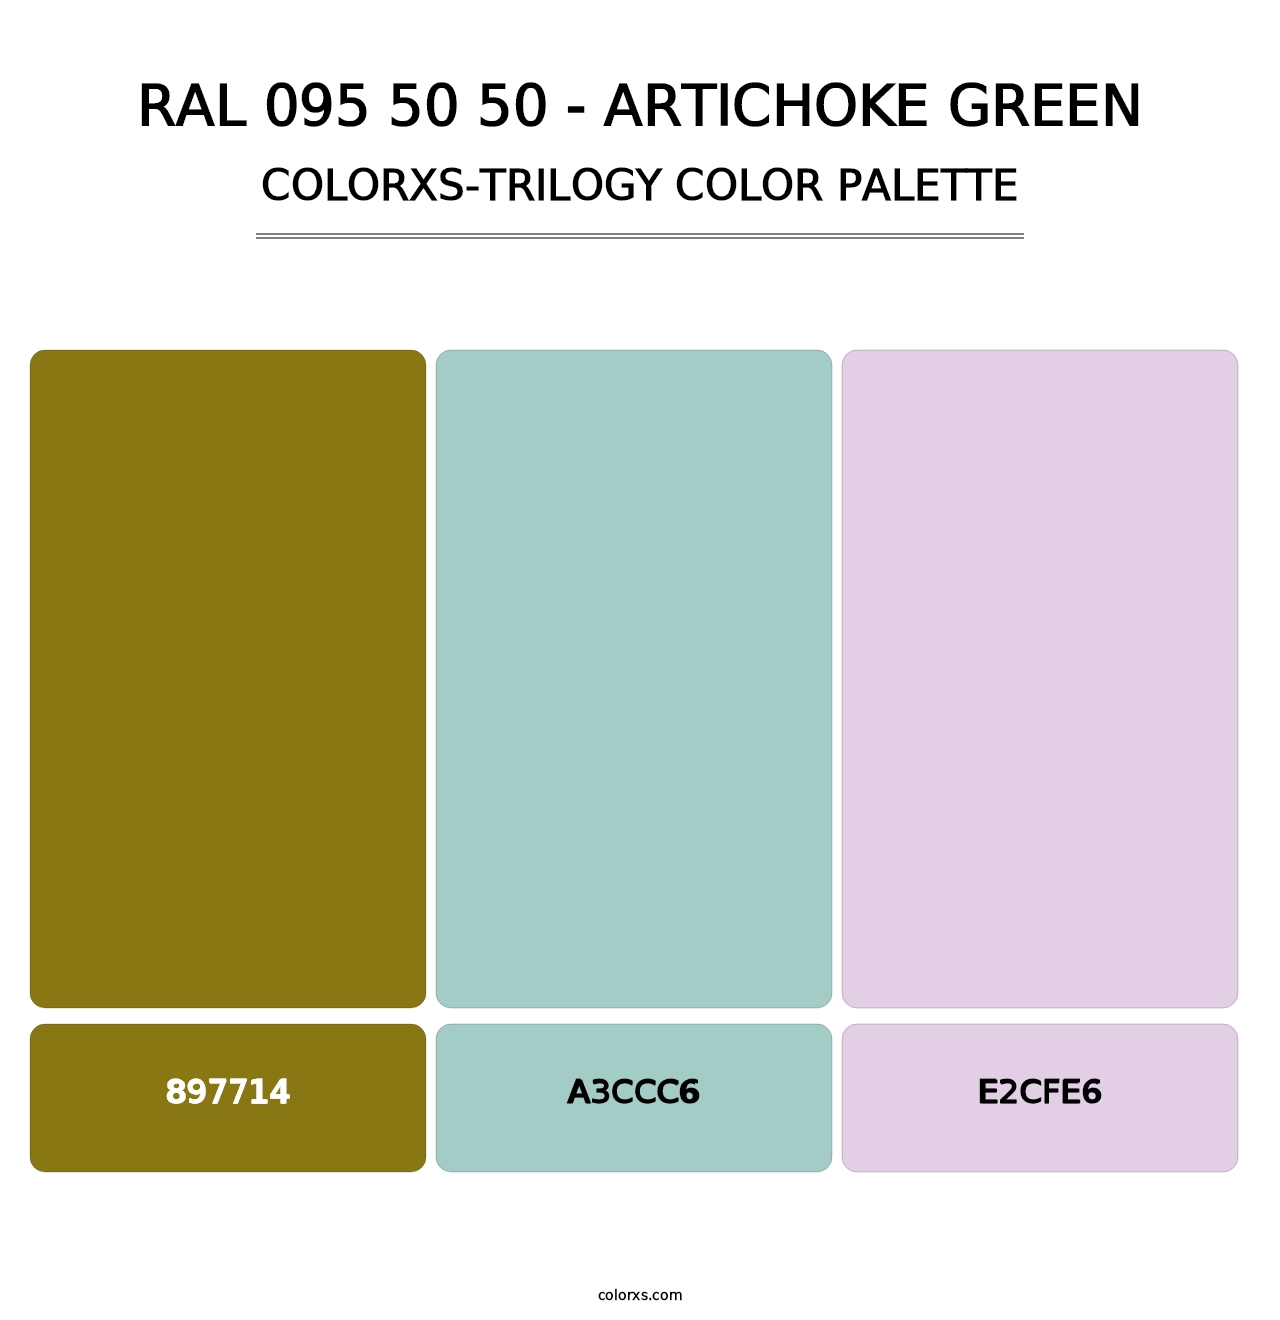 RAL 095 50 50 - Artichoke Green - Colorxs Trilogy Palette